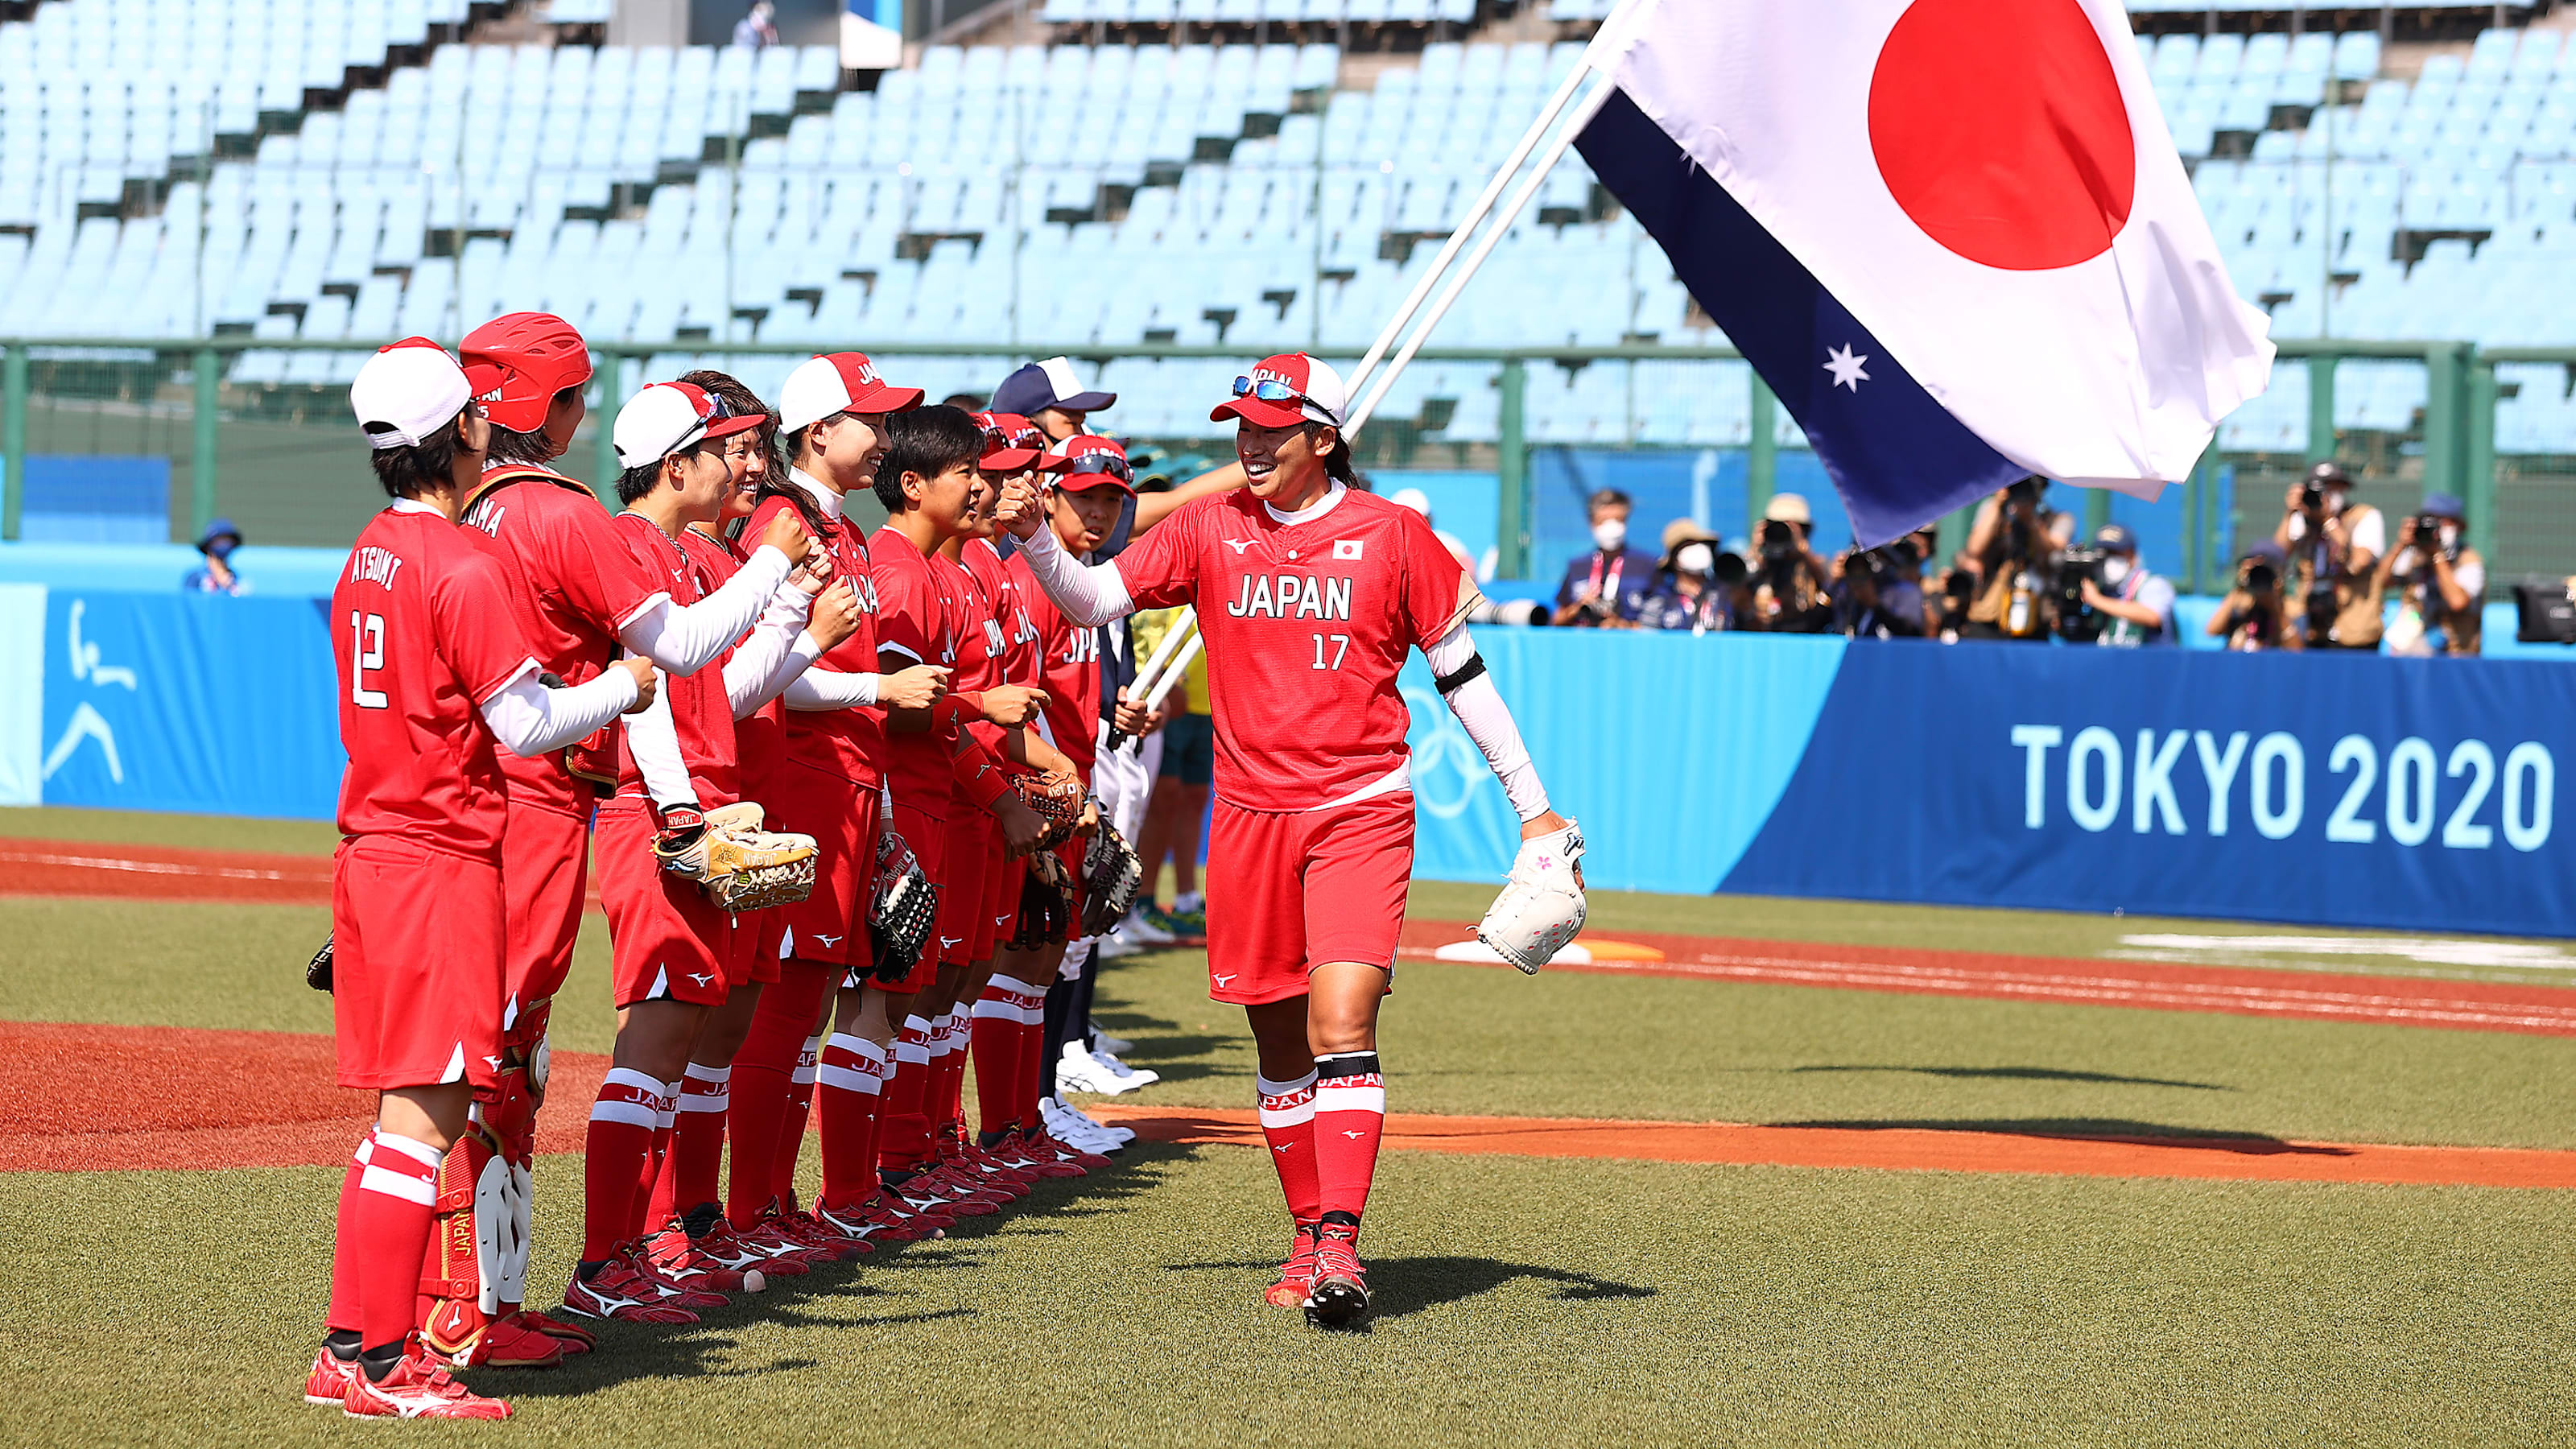 7月22日 東京五輪ソフトボール競技の放送予定 初戦大勝の日本はメキシコと激突 アメリカはカナダと対戦